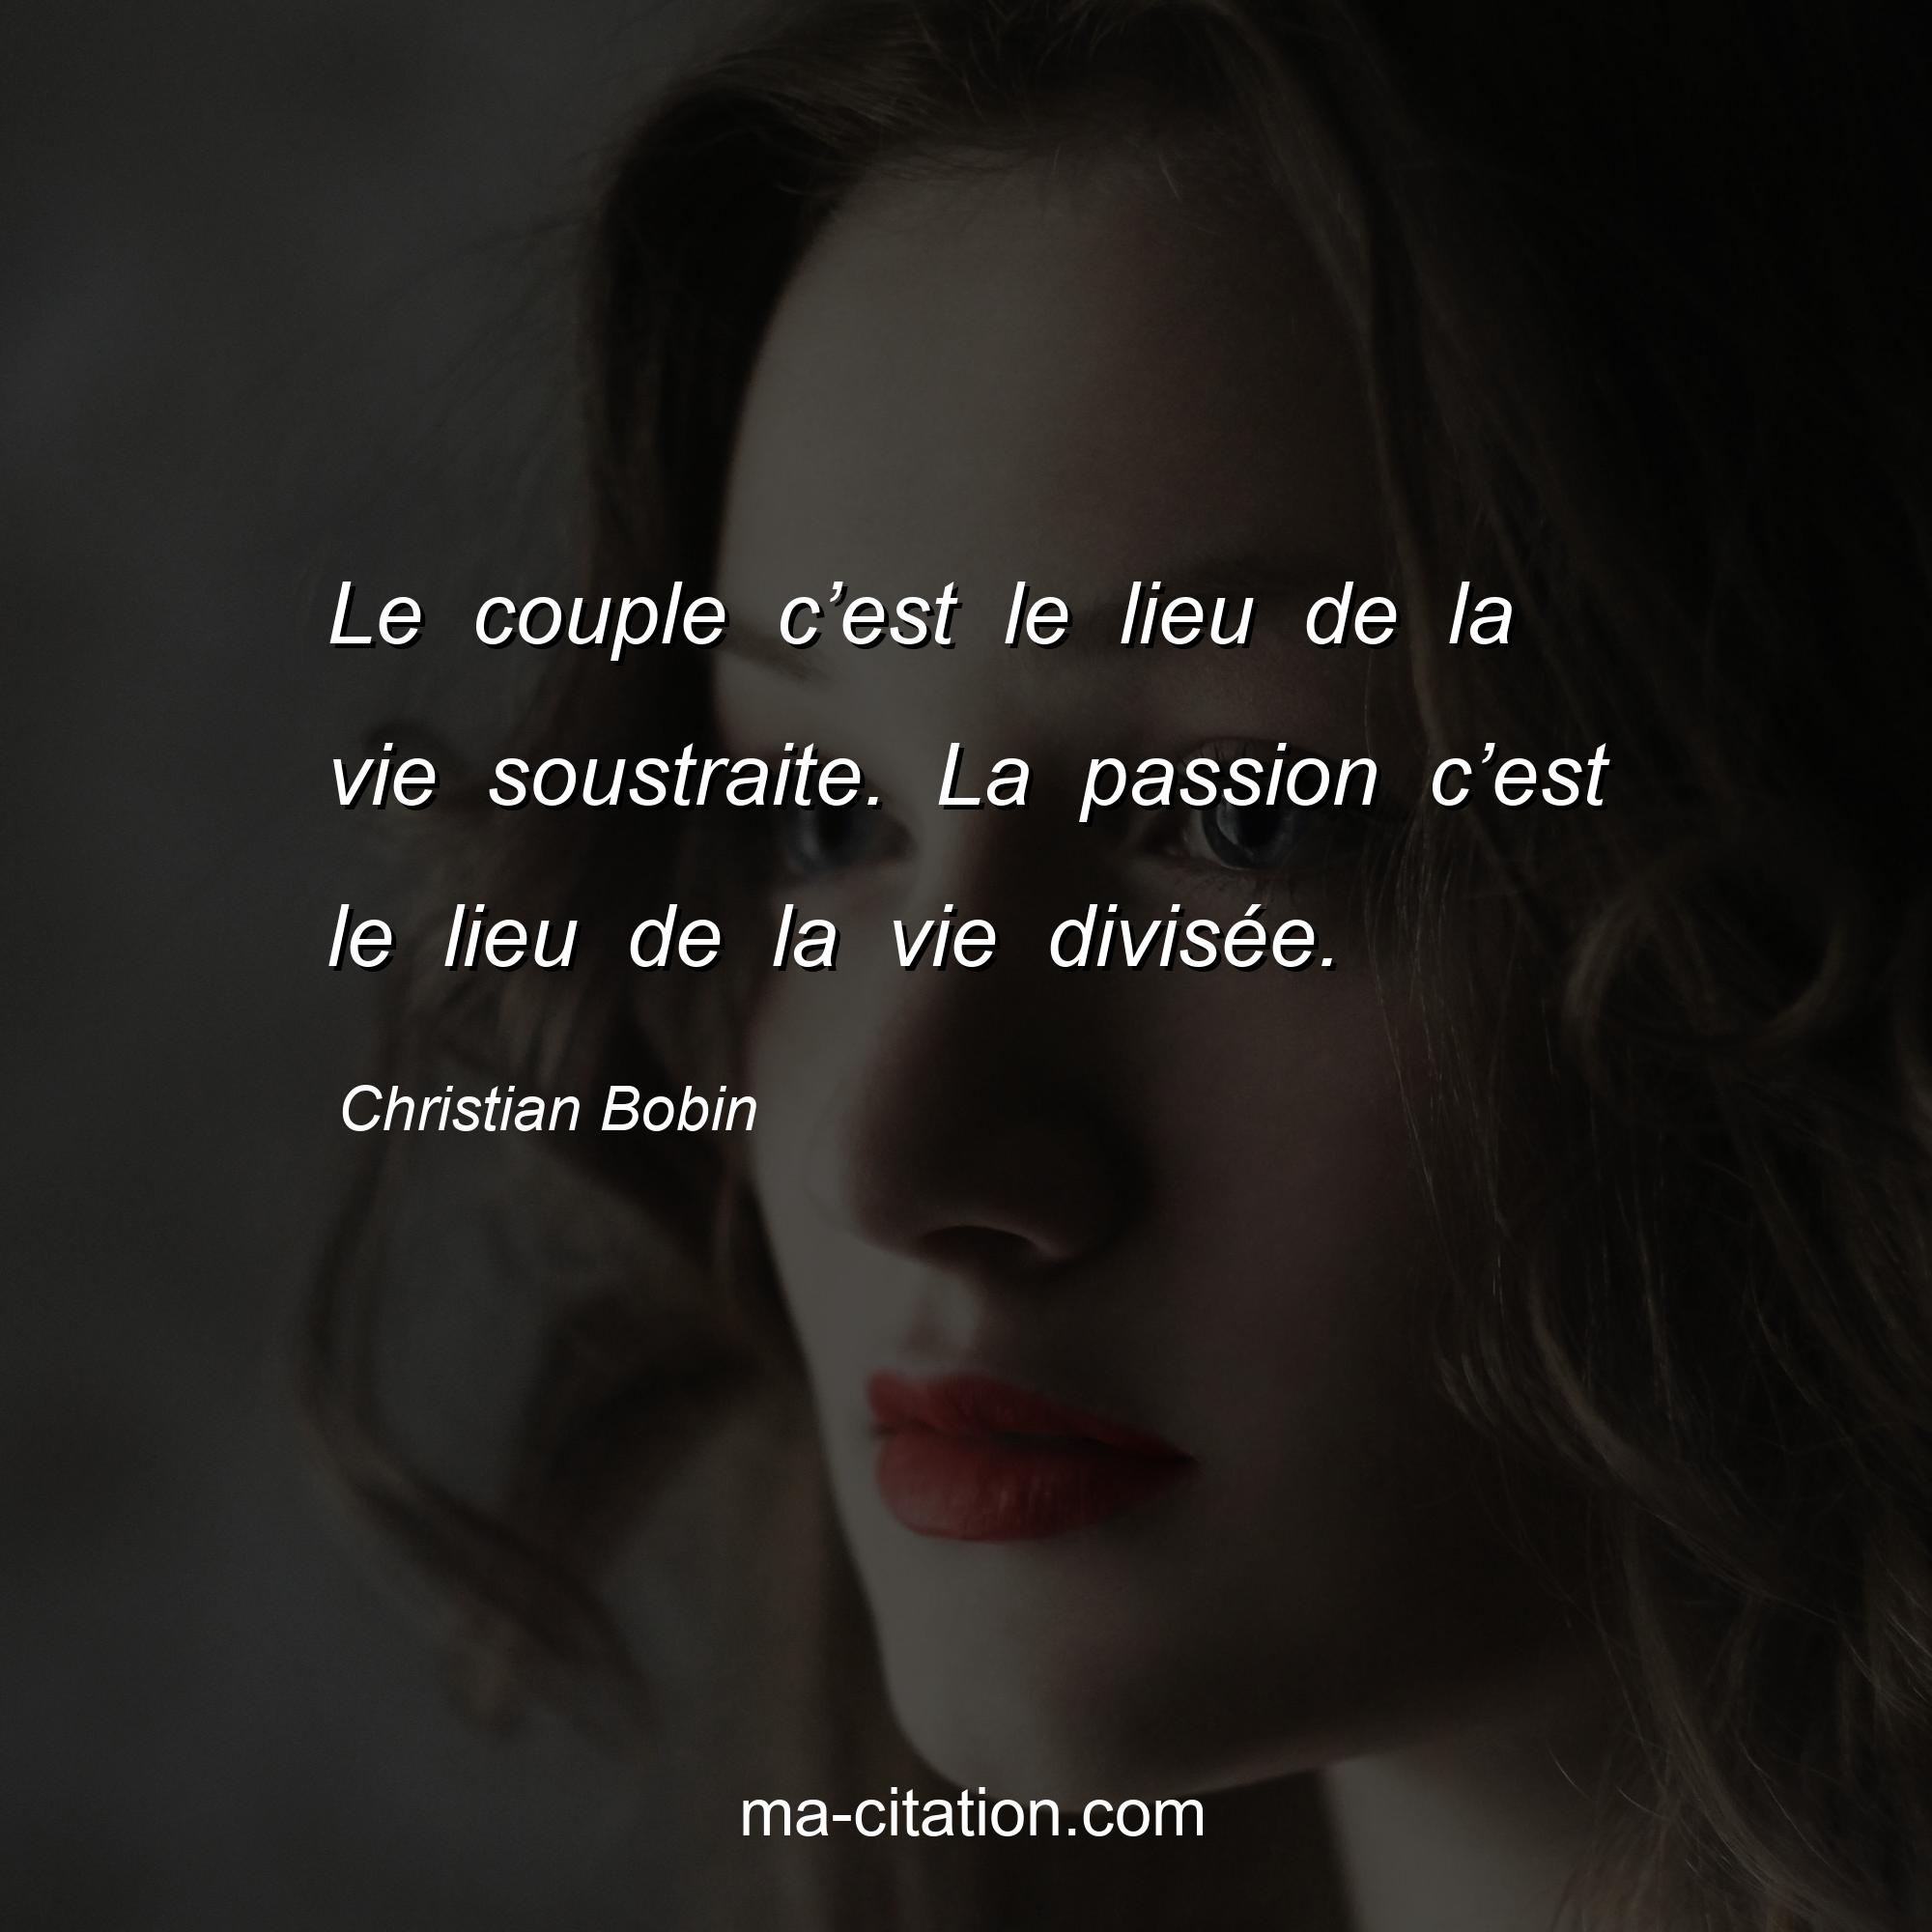 Christian Bobin : Le couple c’est le lieu de la vie soustraite. La passion c’est le lieu de la vie divisée.